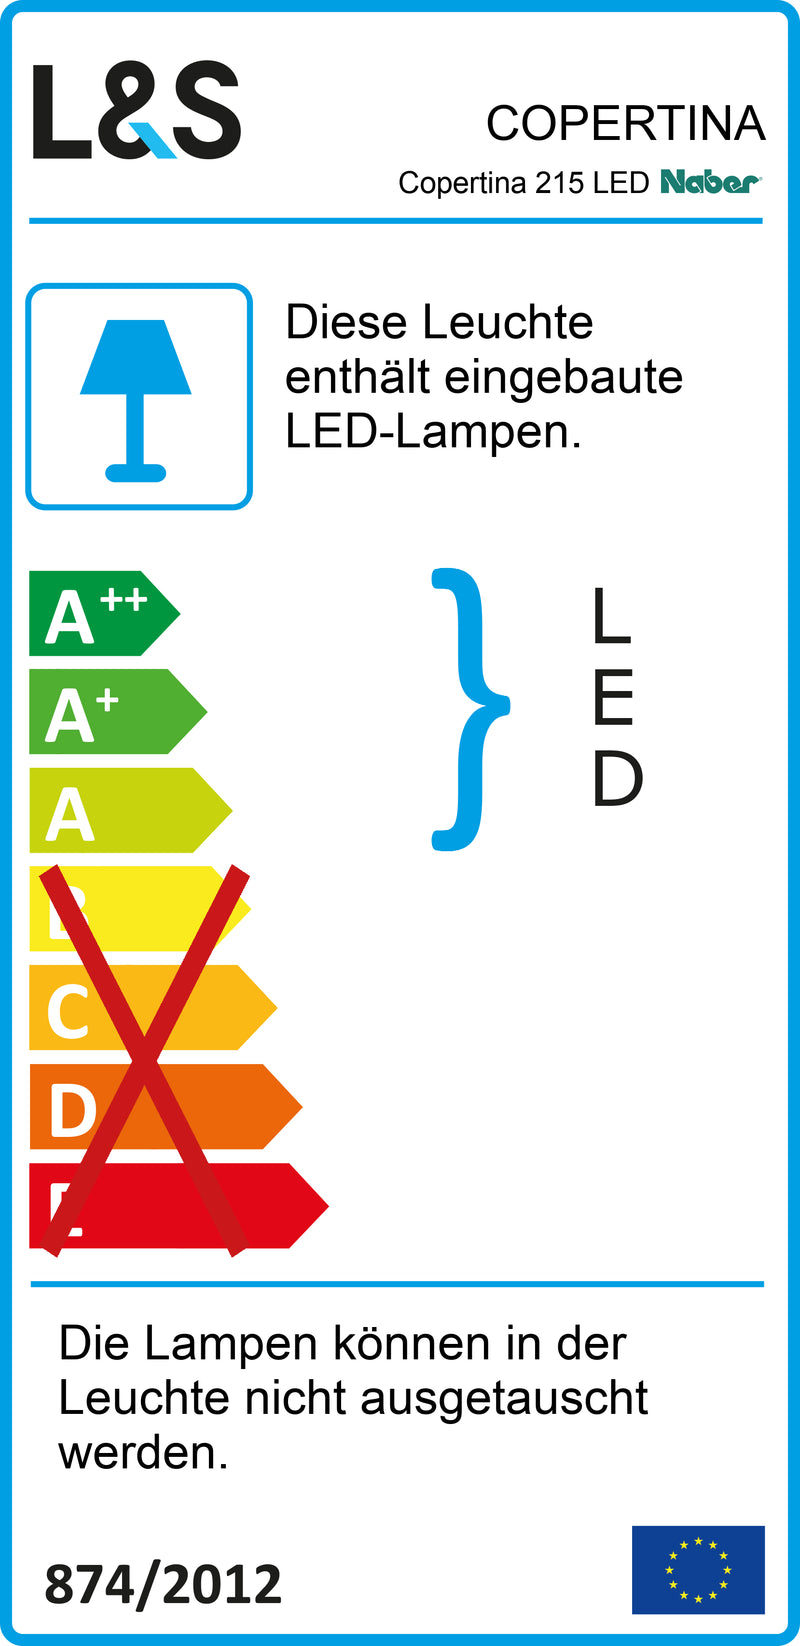 E-Label zu Zeichnung zu Copertina 215 LED als Variante Einzelleuchte, weiß von Naber GmbH in der Kategorie Lichttechnik in Österreich auf conceptshop.at